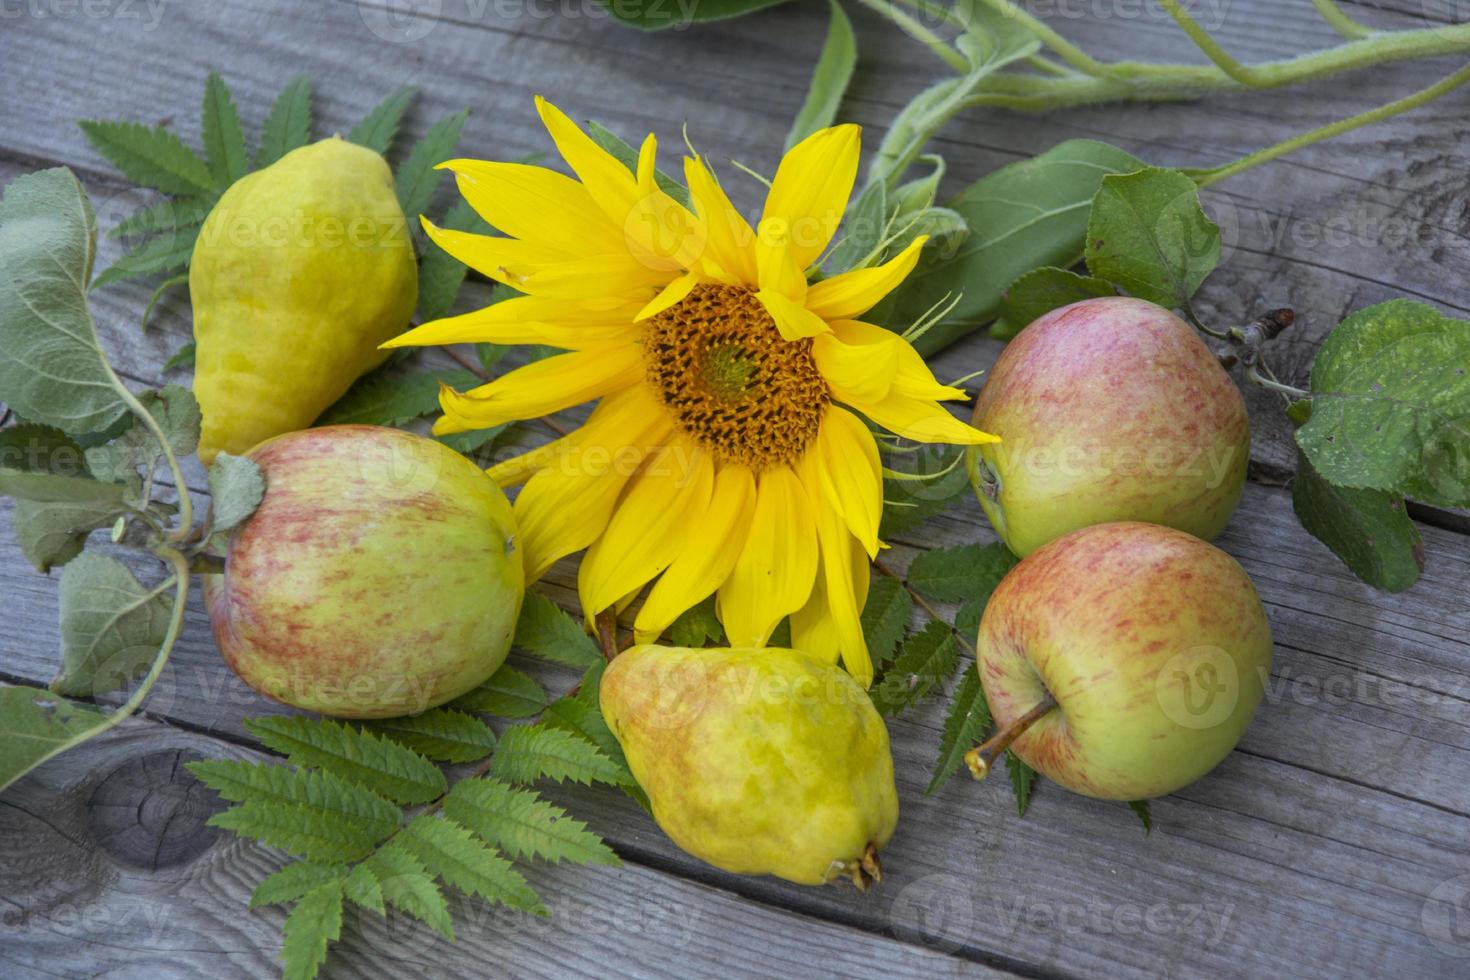 naturaleza muerta con manzanas, peras y una flor de girasol foto